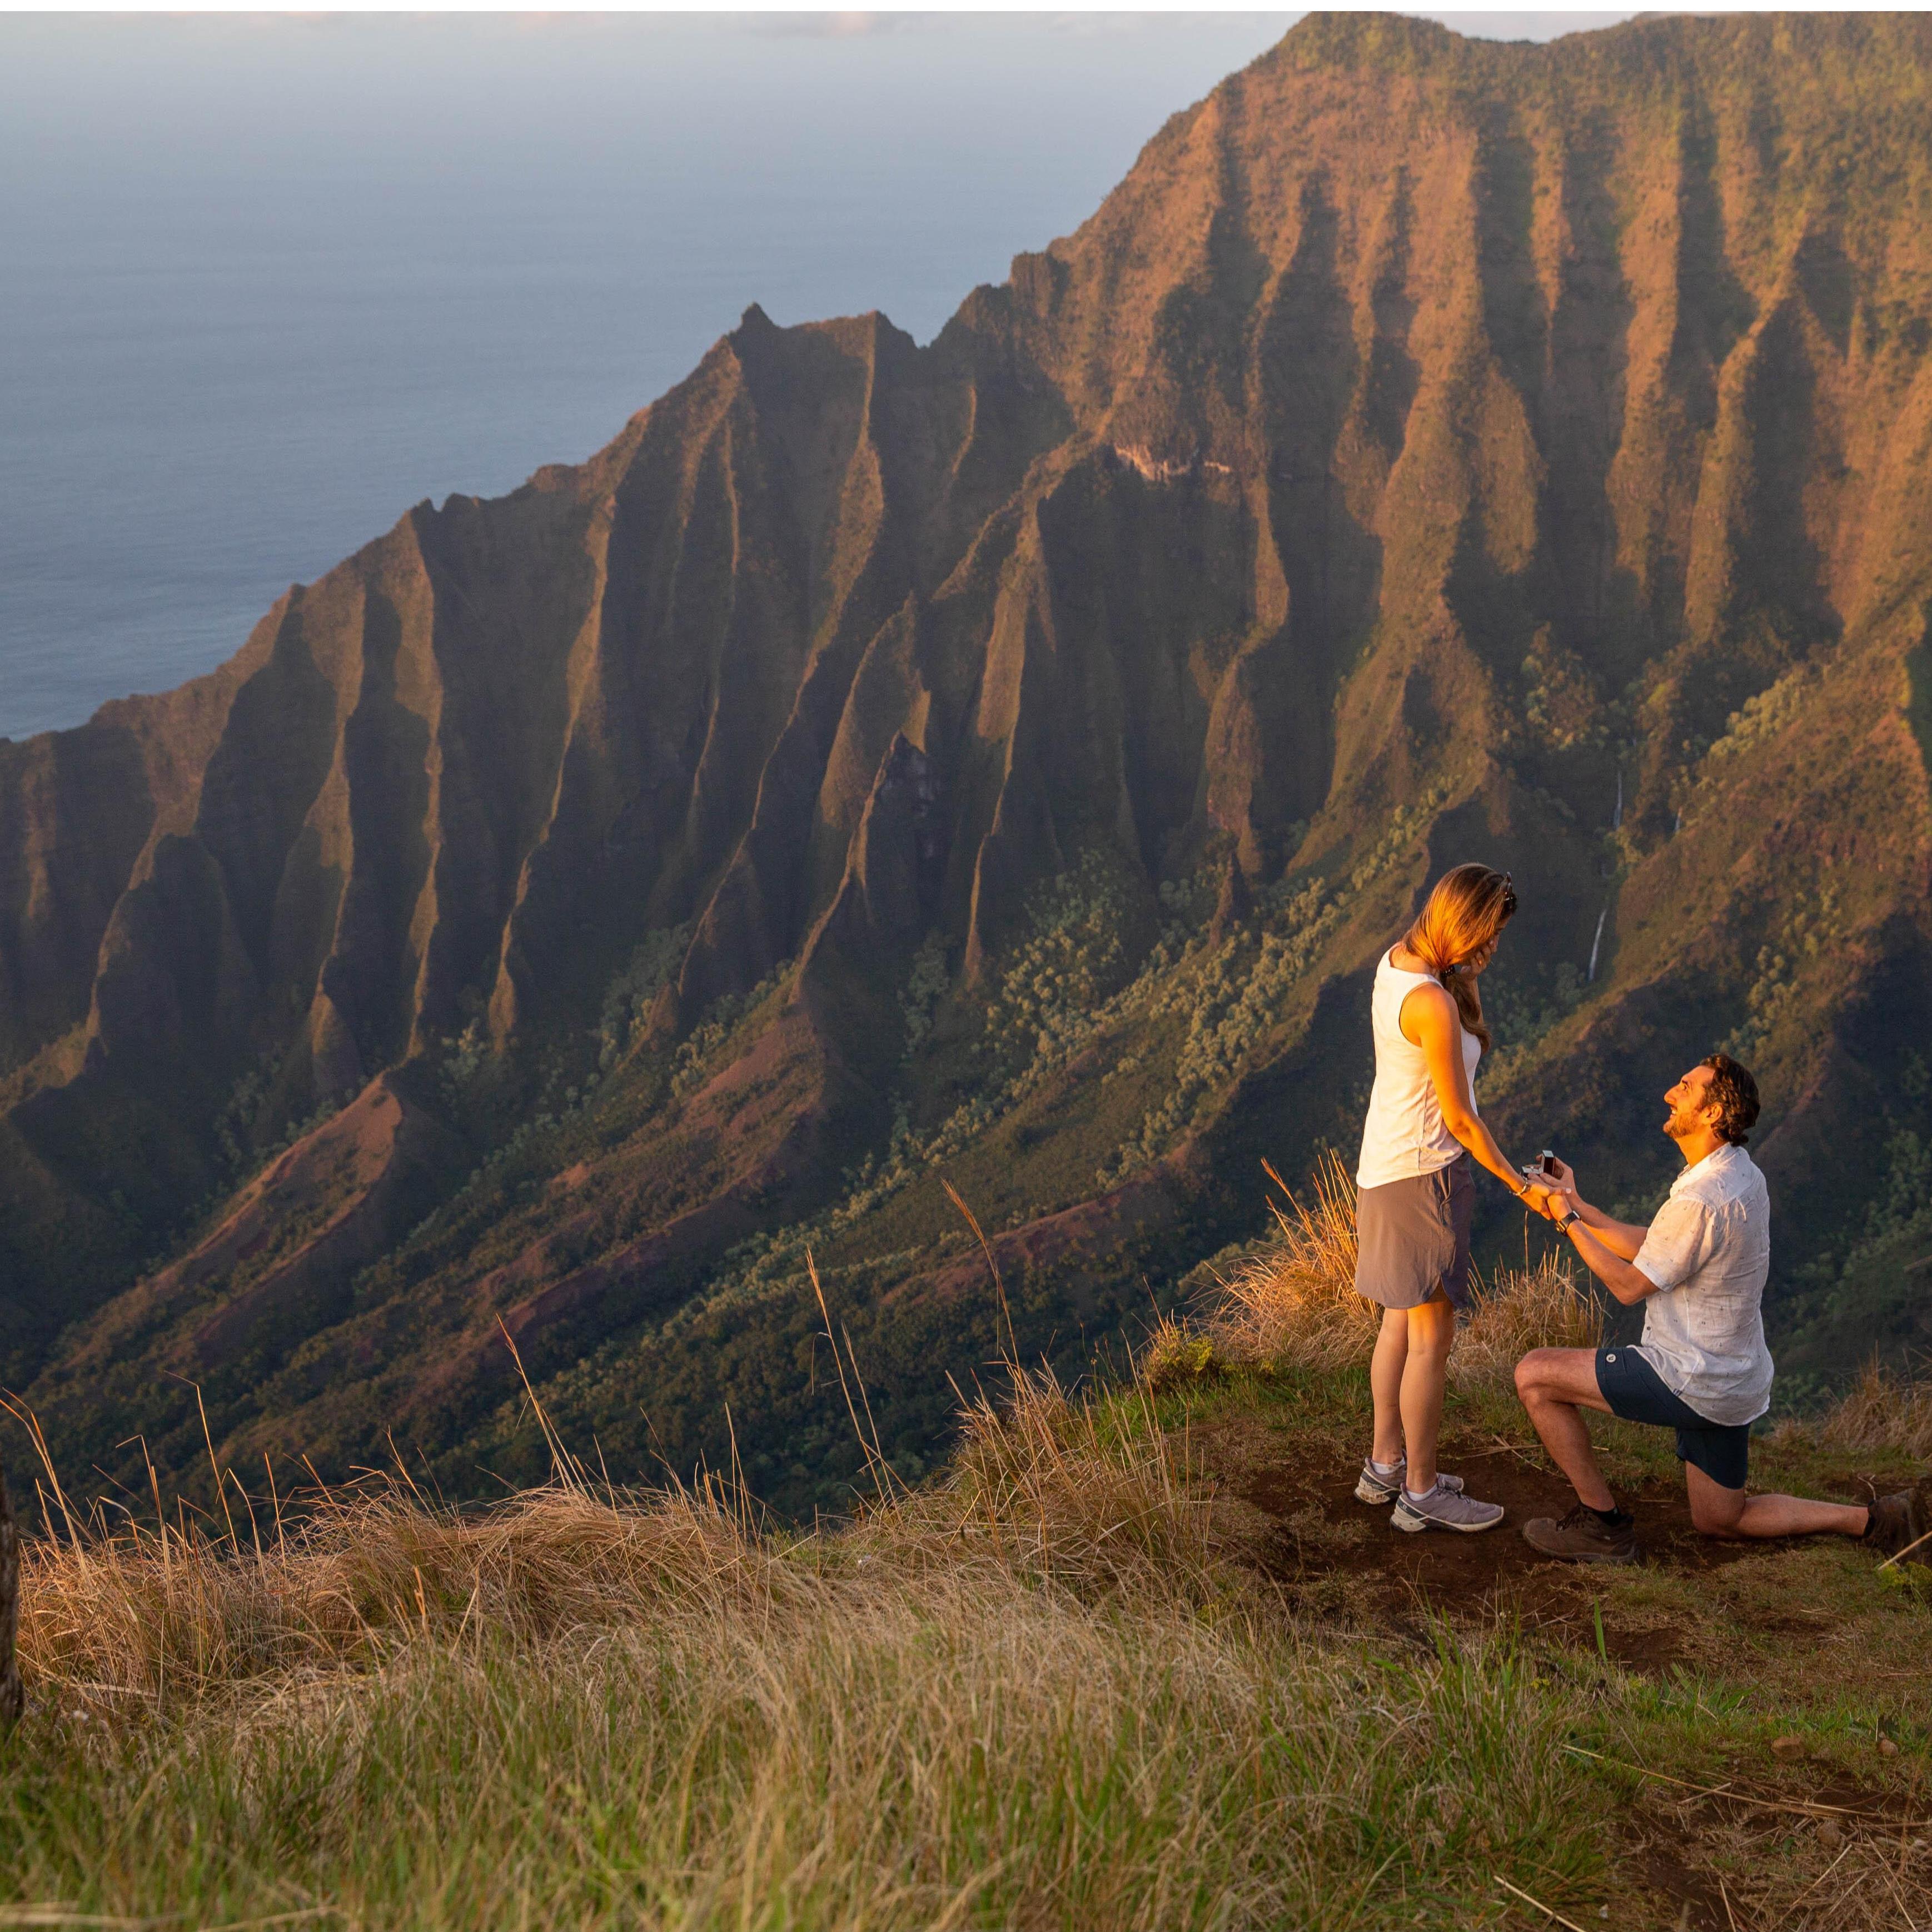 The epic sunset hike proposal on the Nā Pali Coast Ridge.